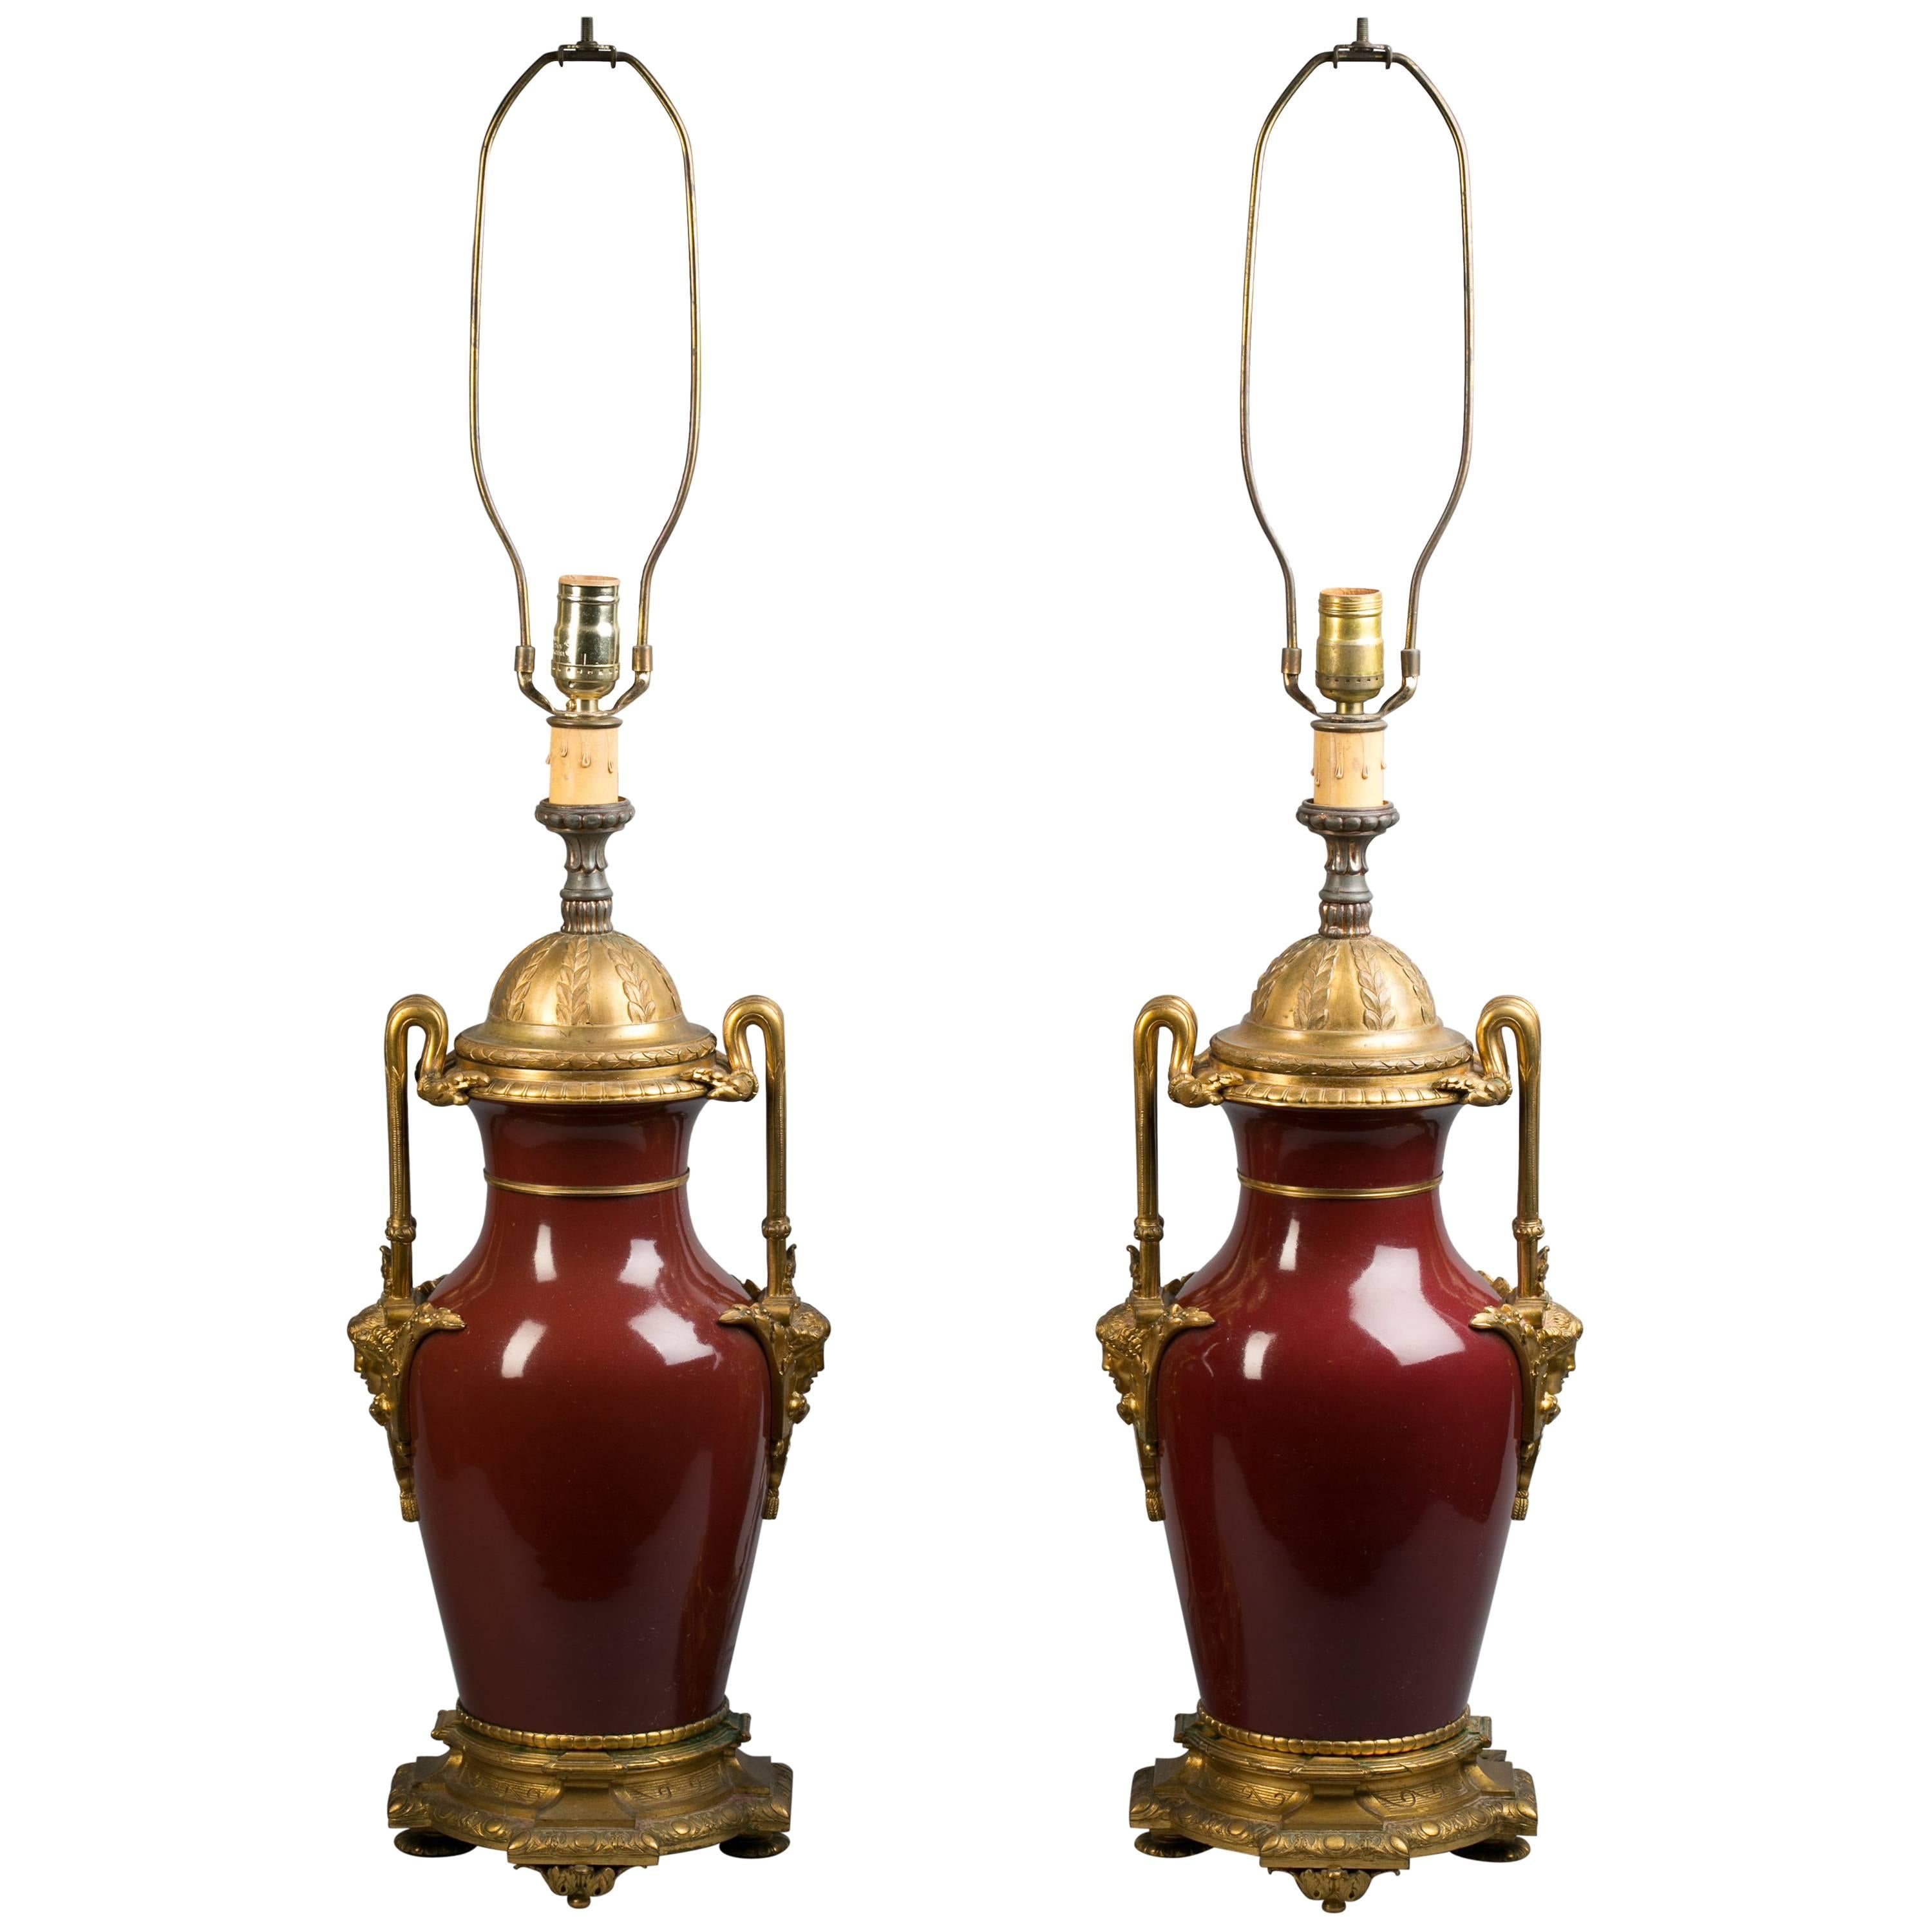 Paar als Lampen montierte Sang de Boeuf-Vasen aus vergoldeter Bronze, um 1860